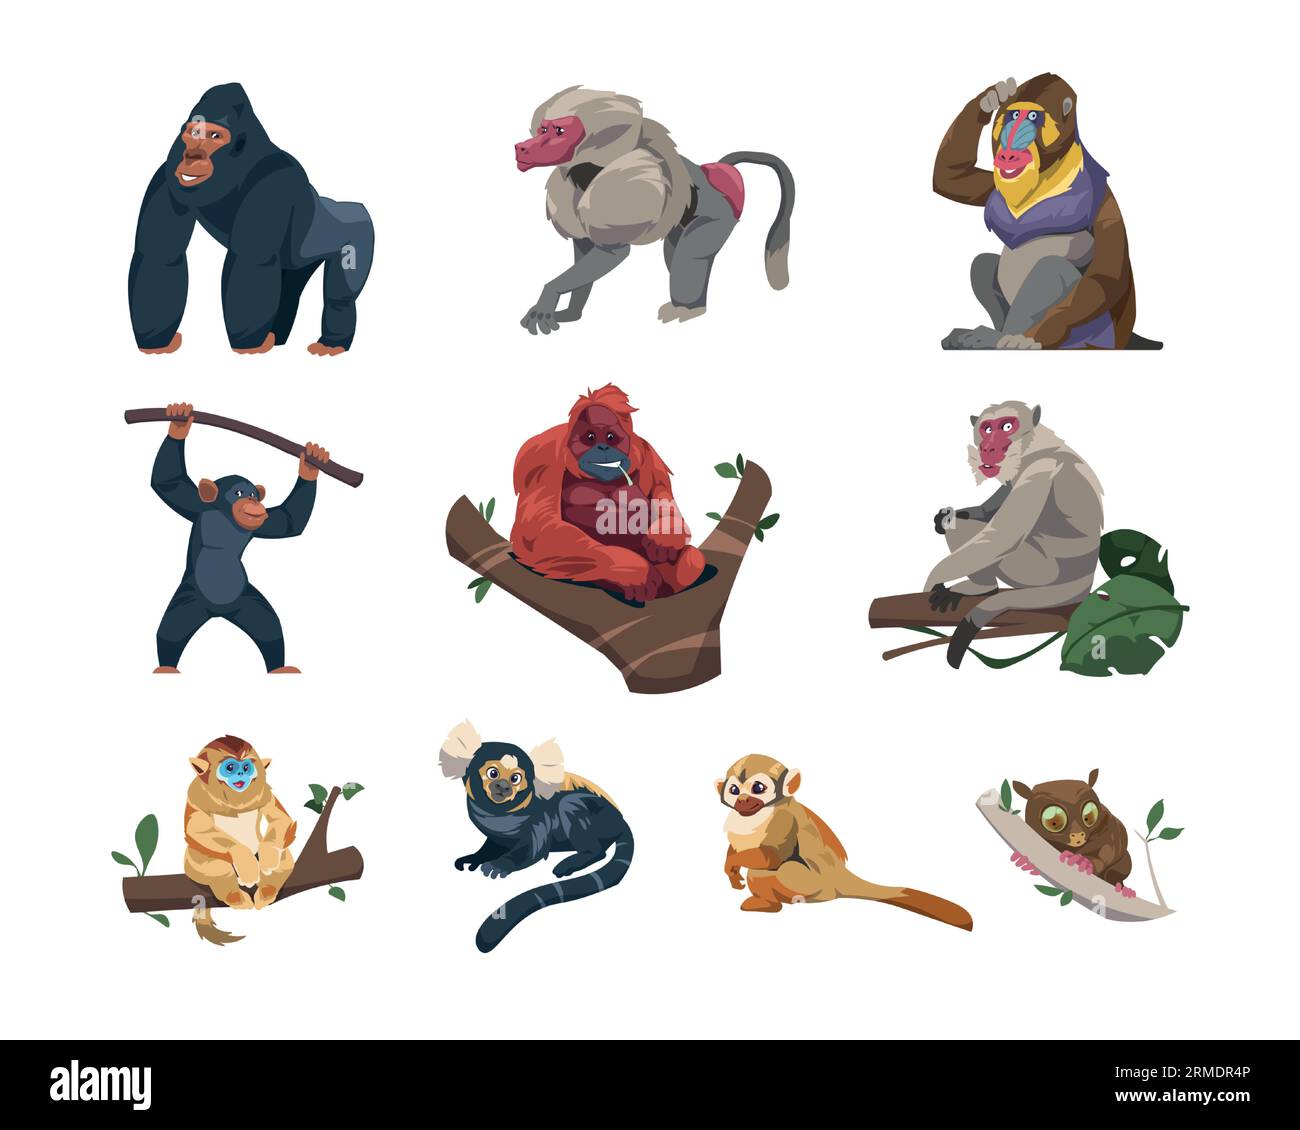 Collection de singes. Personnages de singes de dessin animé dans différentes poses, espèces et races de monkeyshines, zoo de primates tropicaux mignons ou concept de faune Illustration de Vecteur